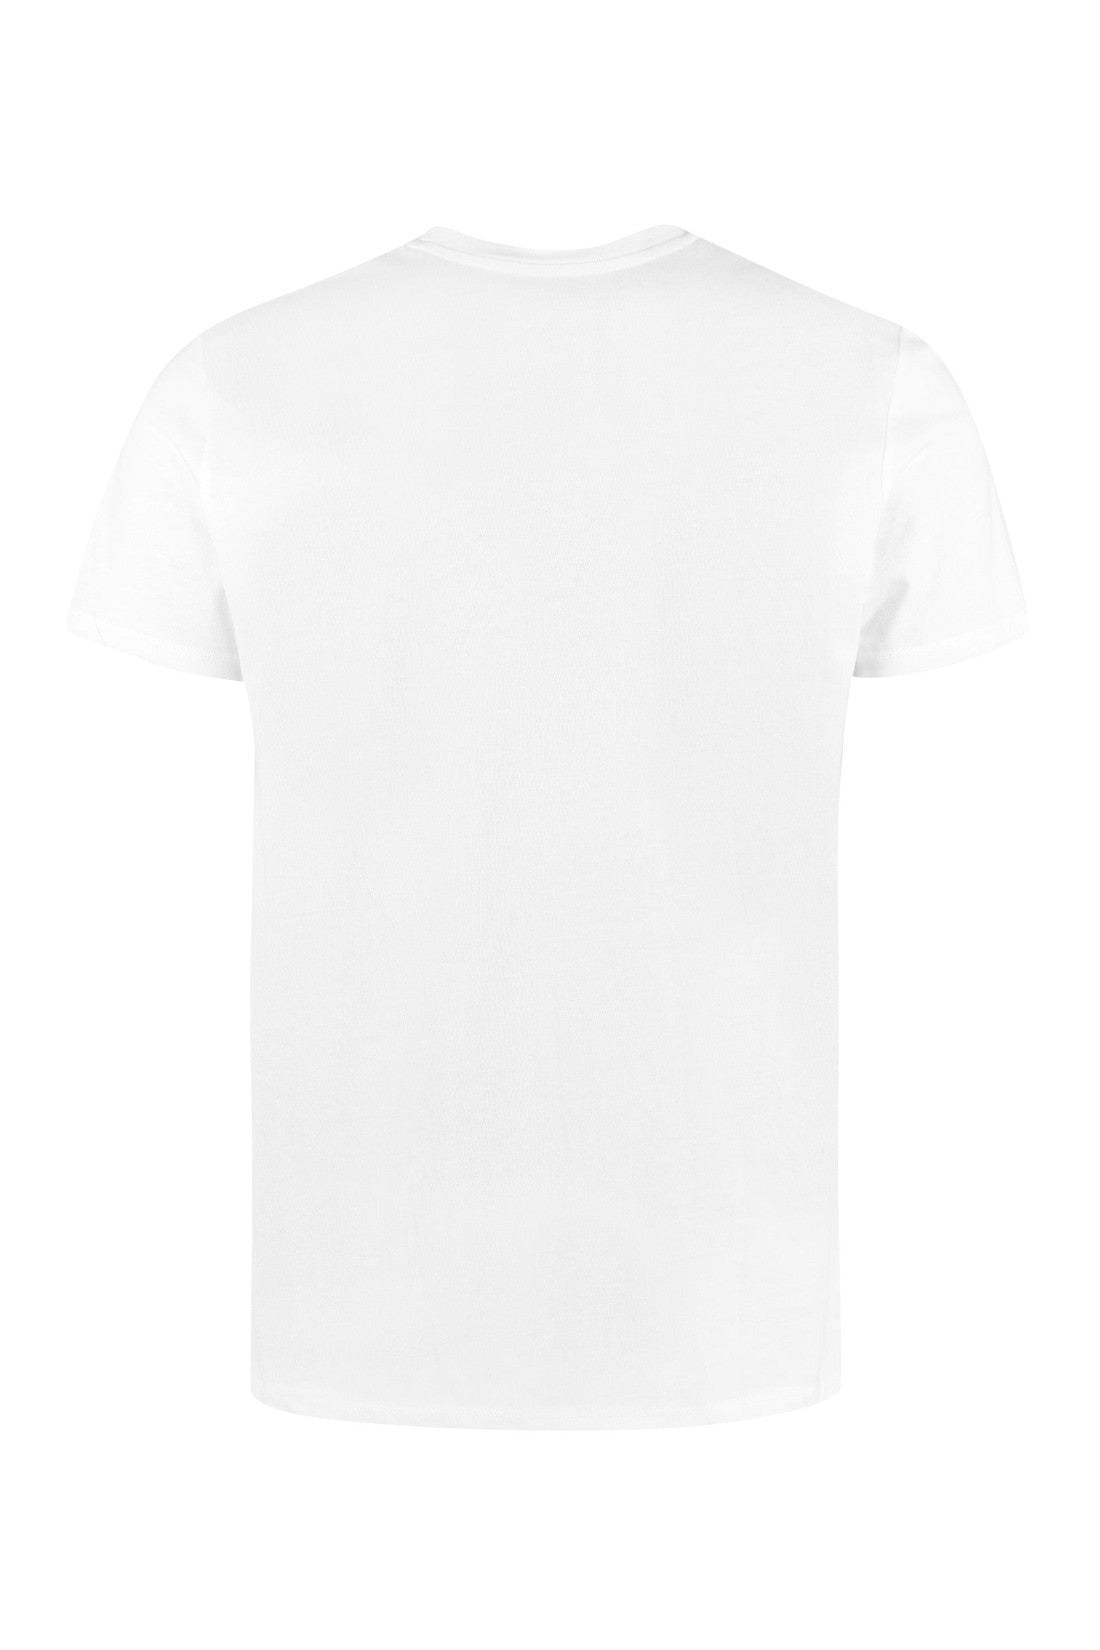 A.P.C.-OUTLET-SALE-Vpc cotton t-shirt-ARCHIVIST